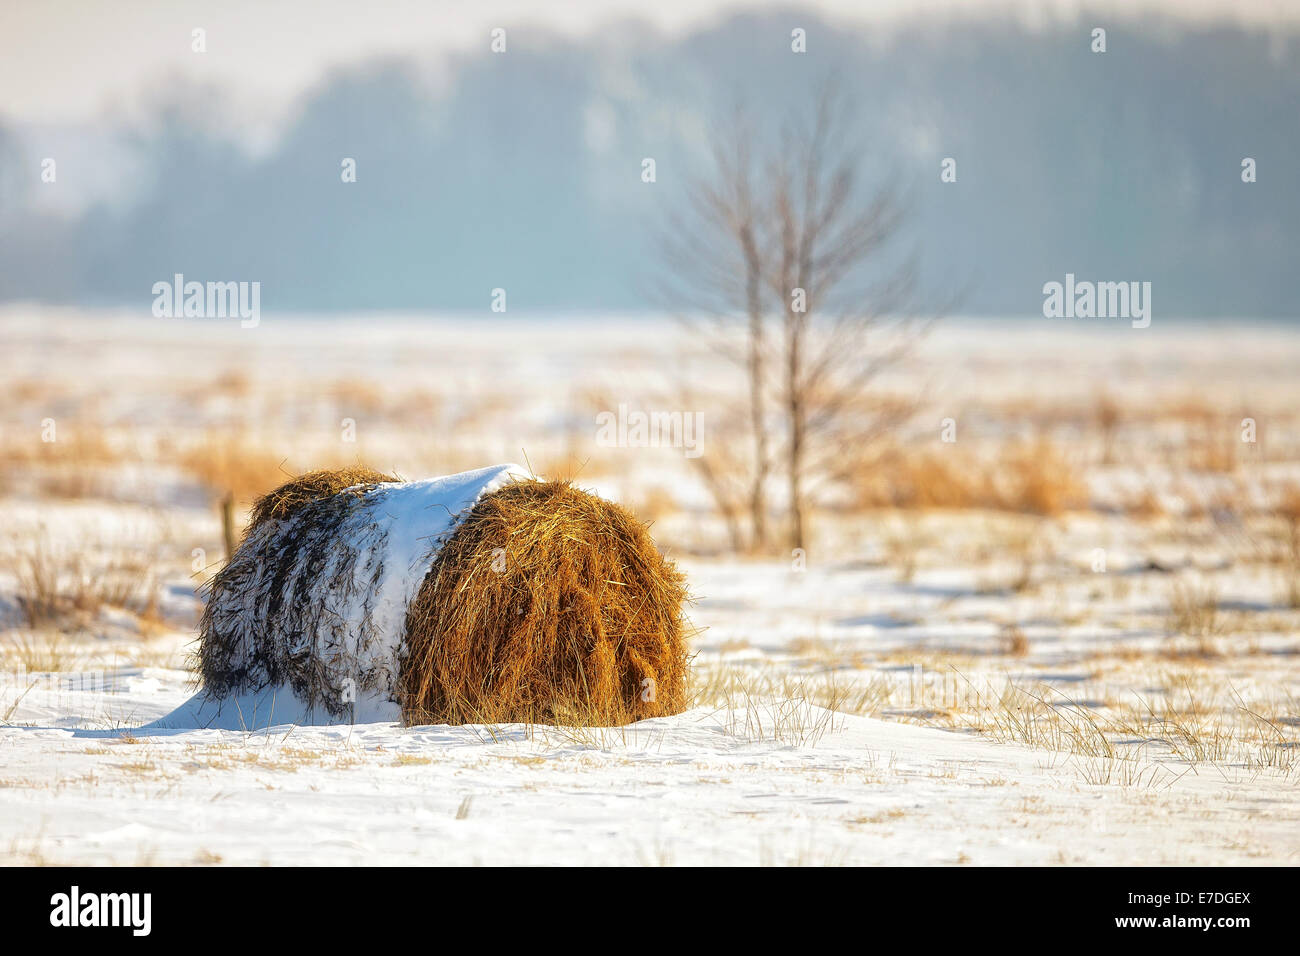 Bale of hay in a field, winter landscape Stock Photo